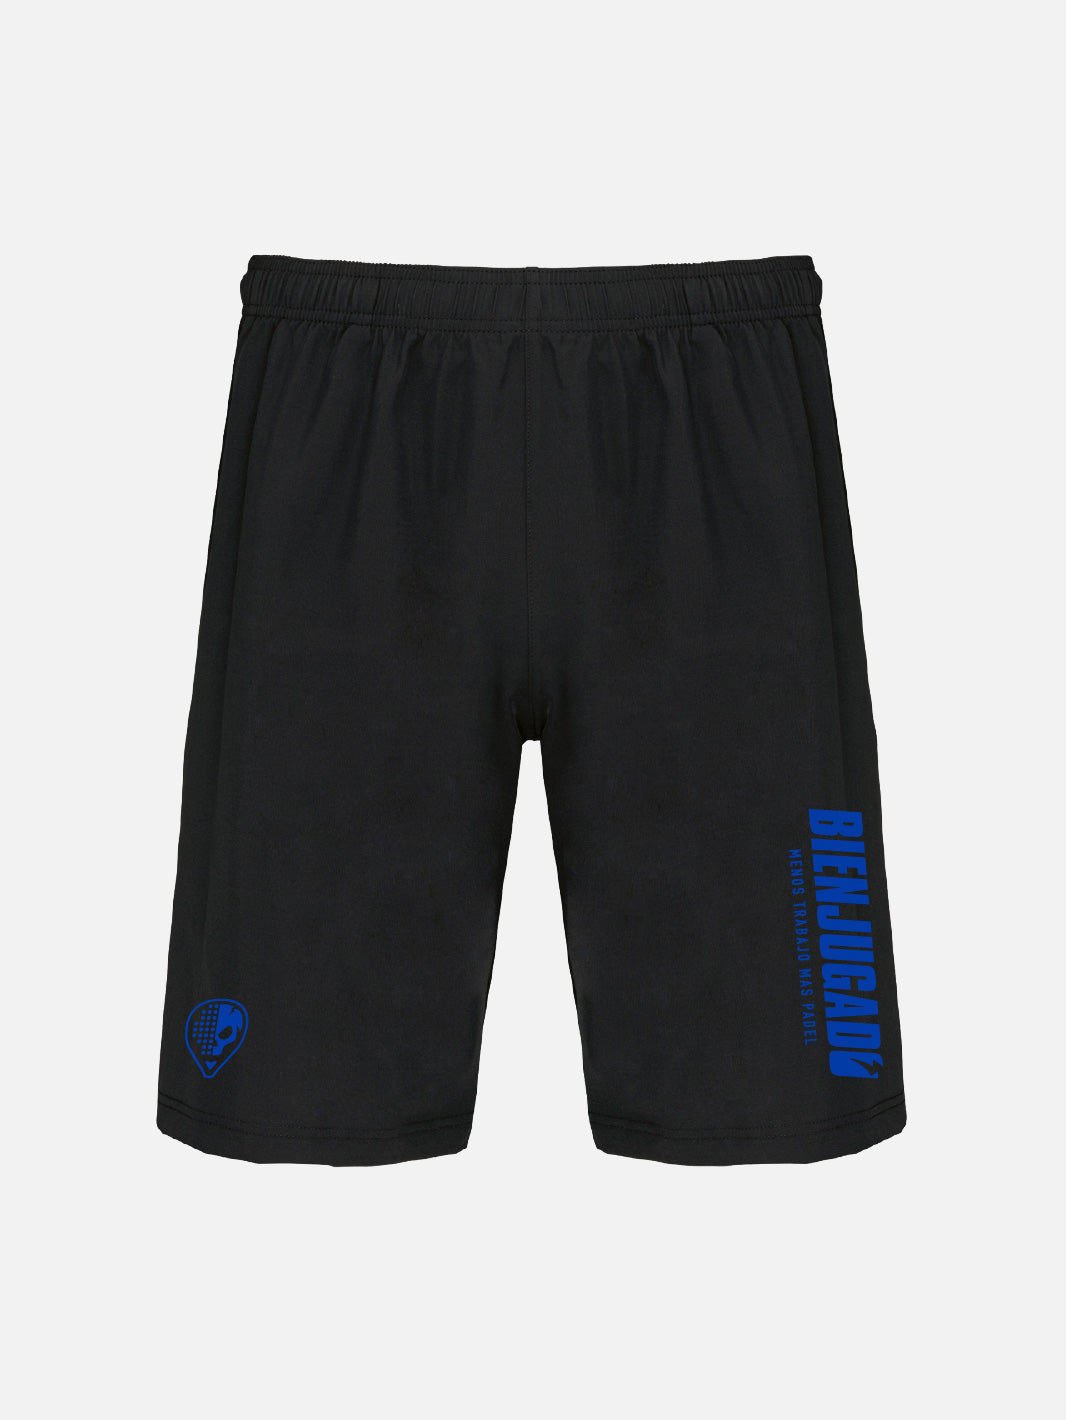 Men's Shorts - Black